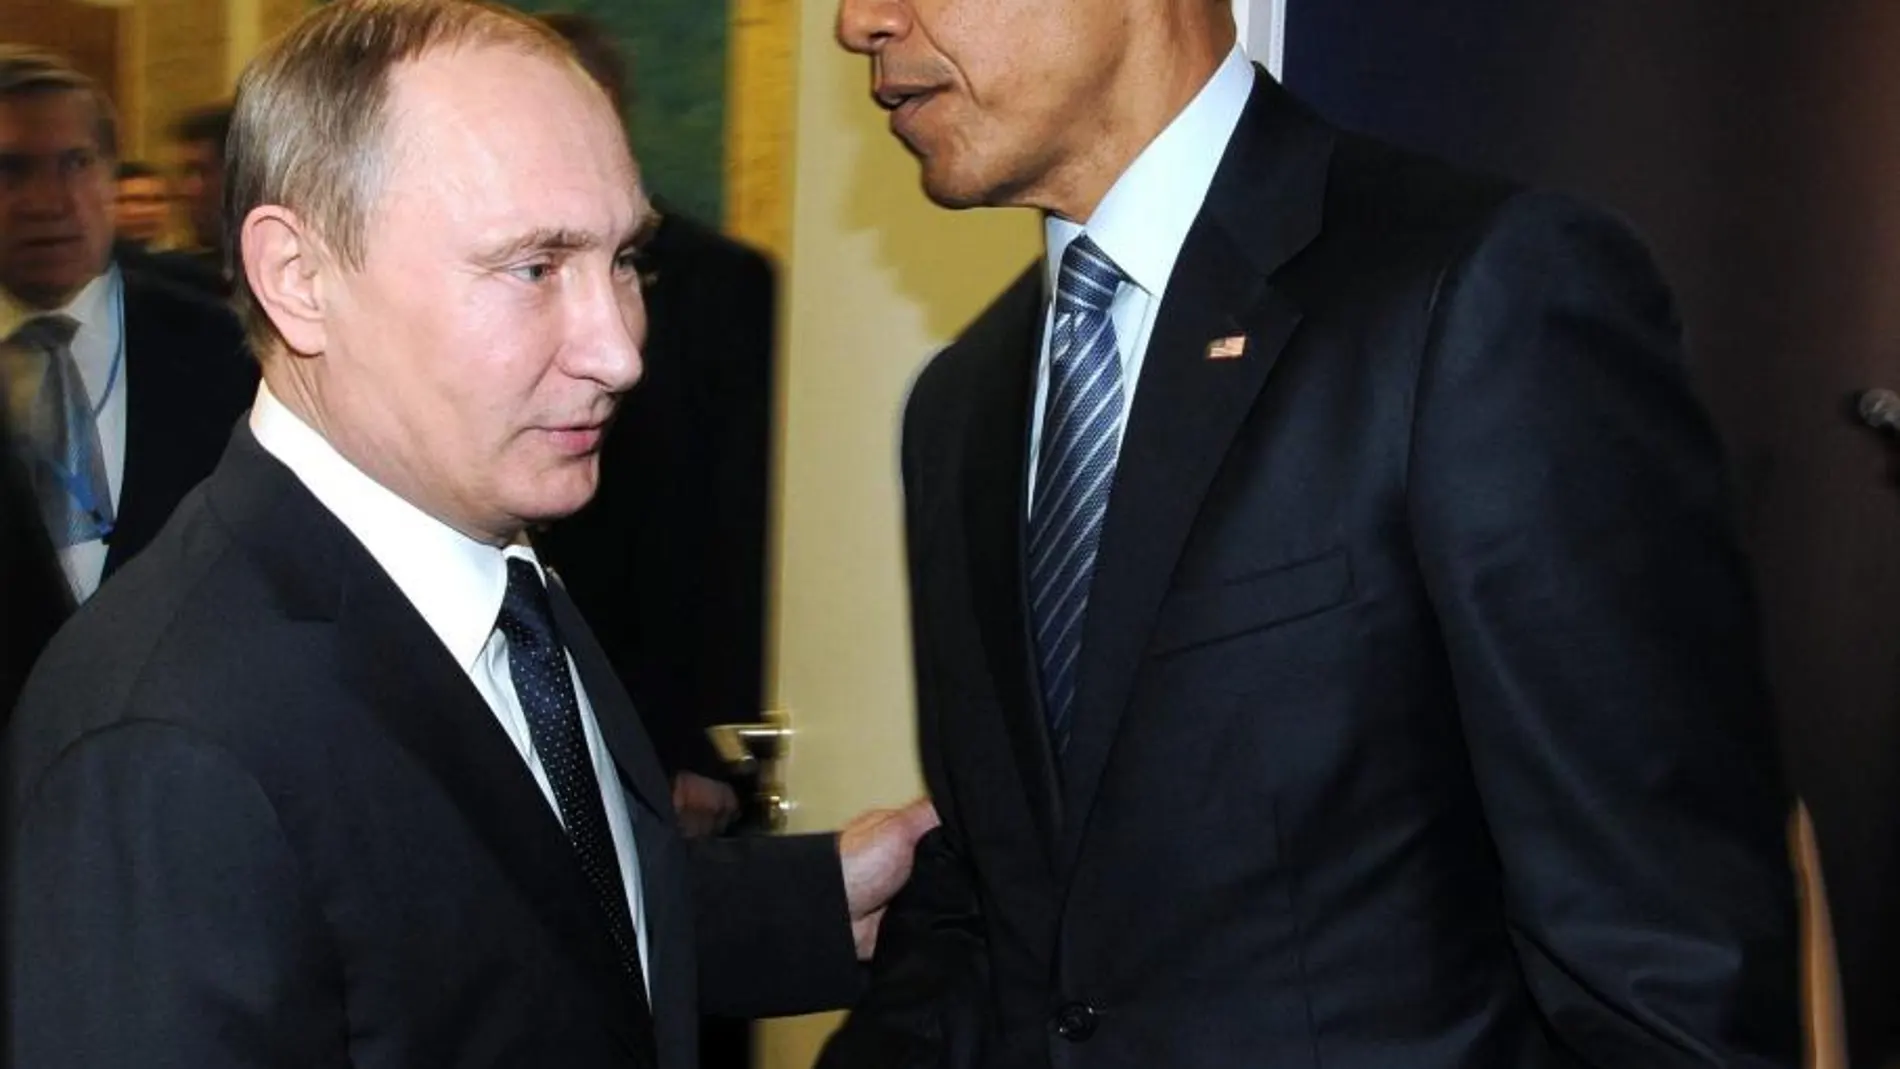 El presidente ruso, Vladímir Putin, y su homólogo estadounidense, Barack Obama, se estrechan la mano durante su encuentro en el marco de la Cumbre del Clima que se celebra en París (Francia)